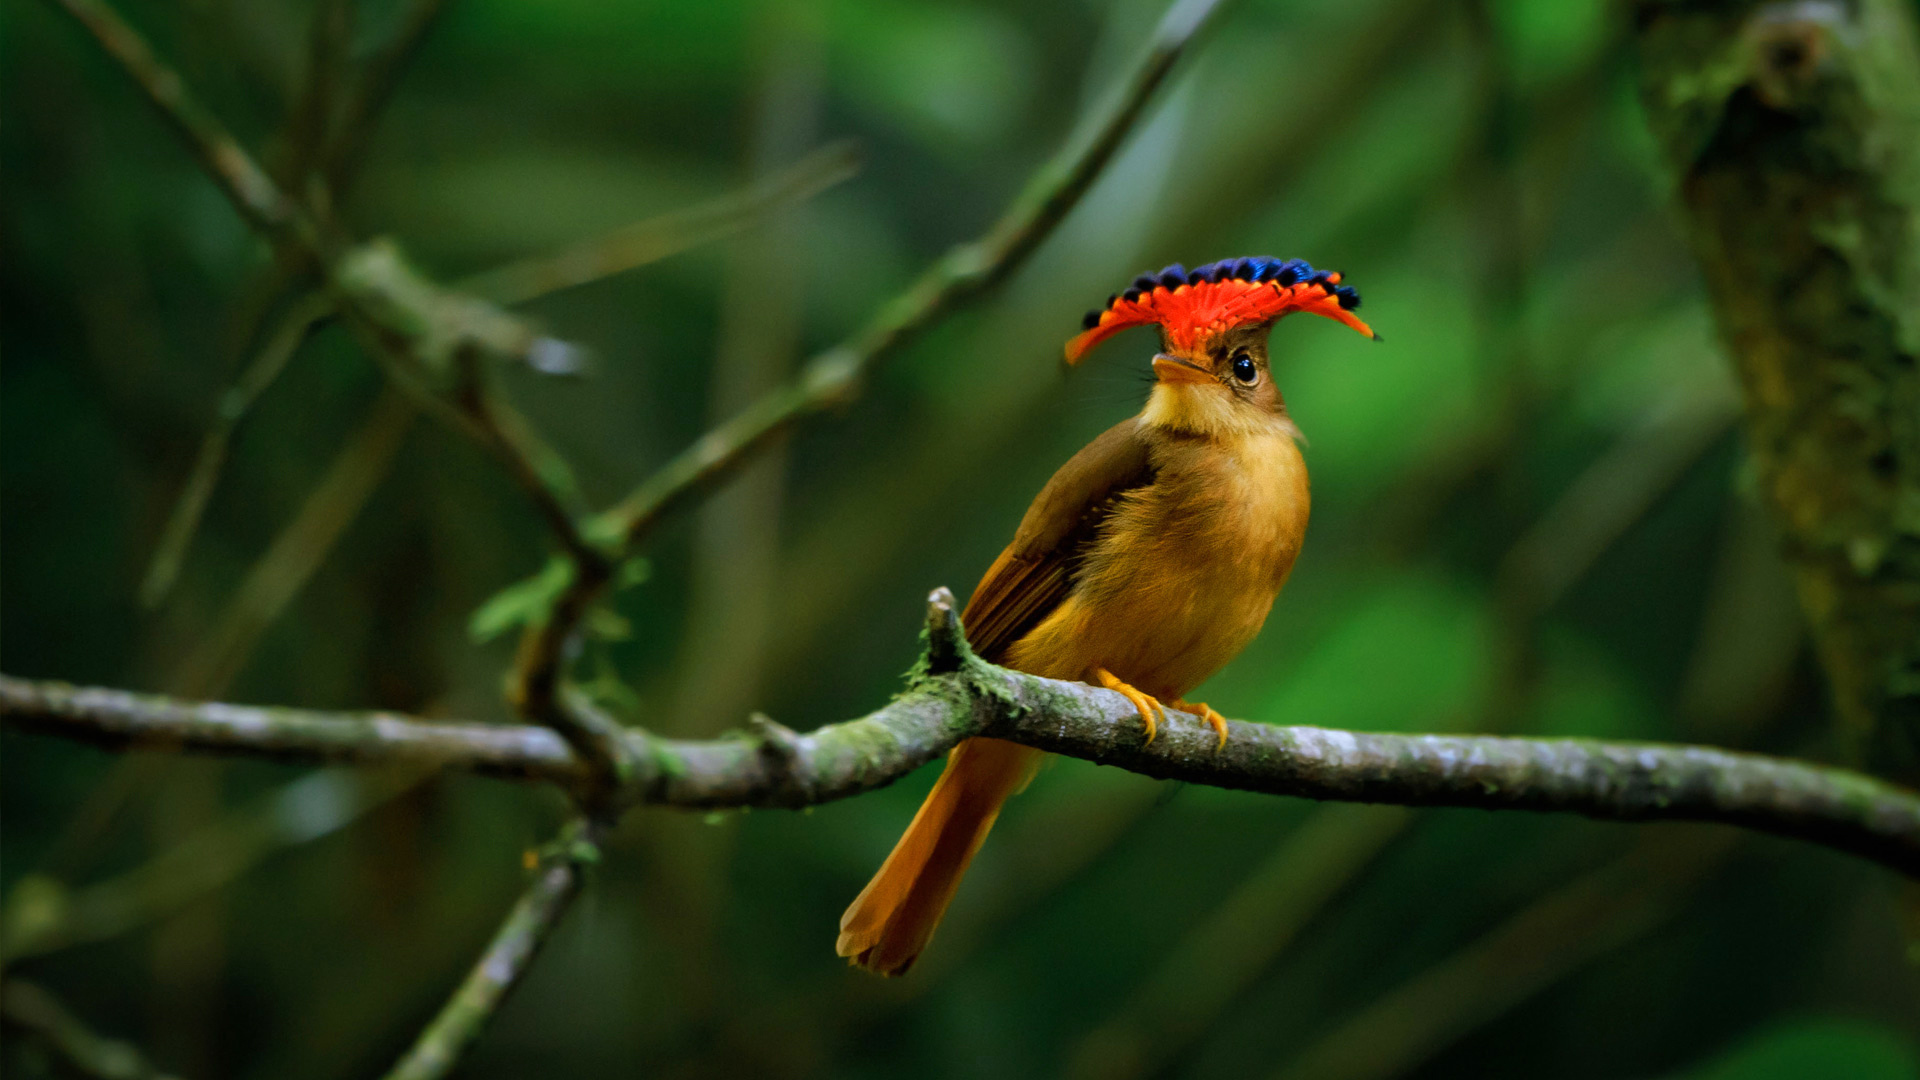 Tải 25 hình ảnh các loài chim đẹp nhất thế giới - [Kích thước hình ảnh: 1920x1080 px]